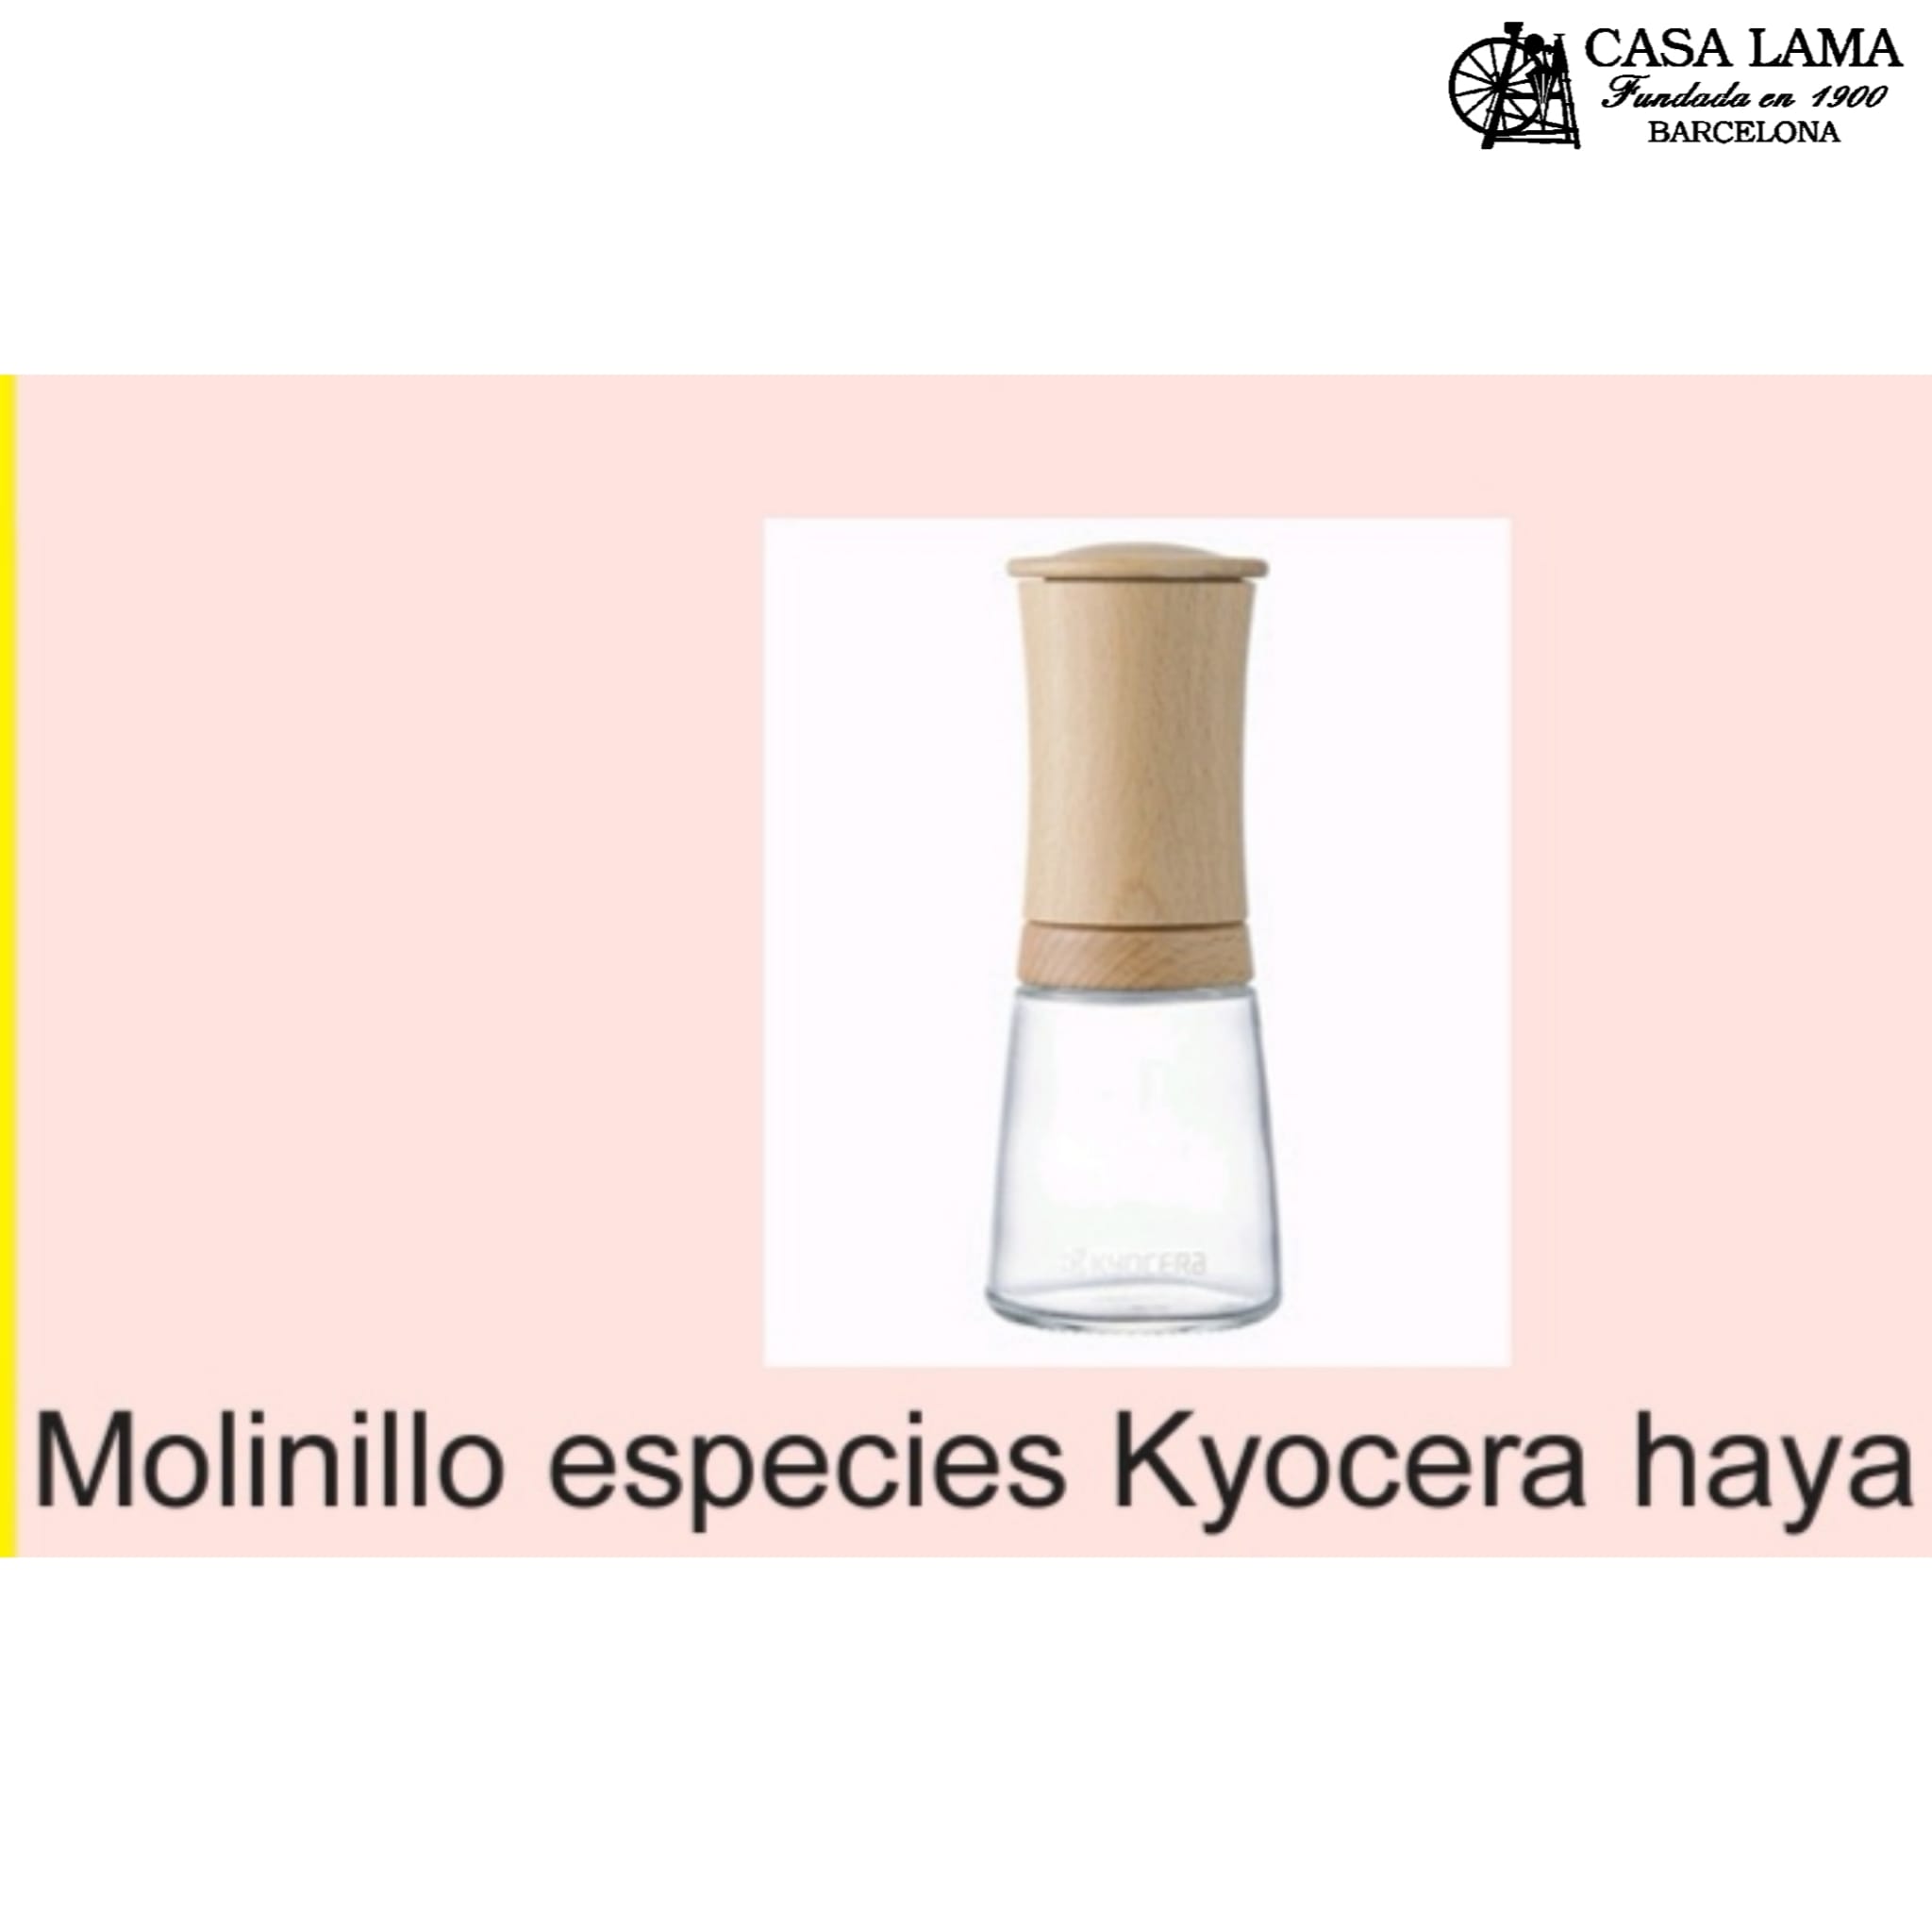 Molinillo especies Kyocera haya marrón claro